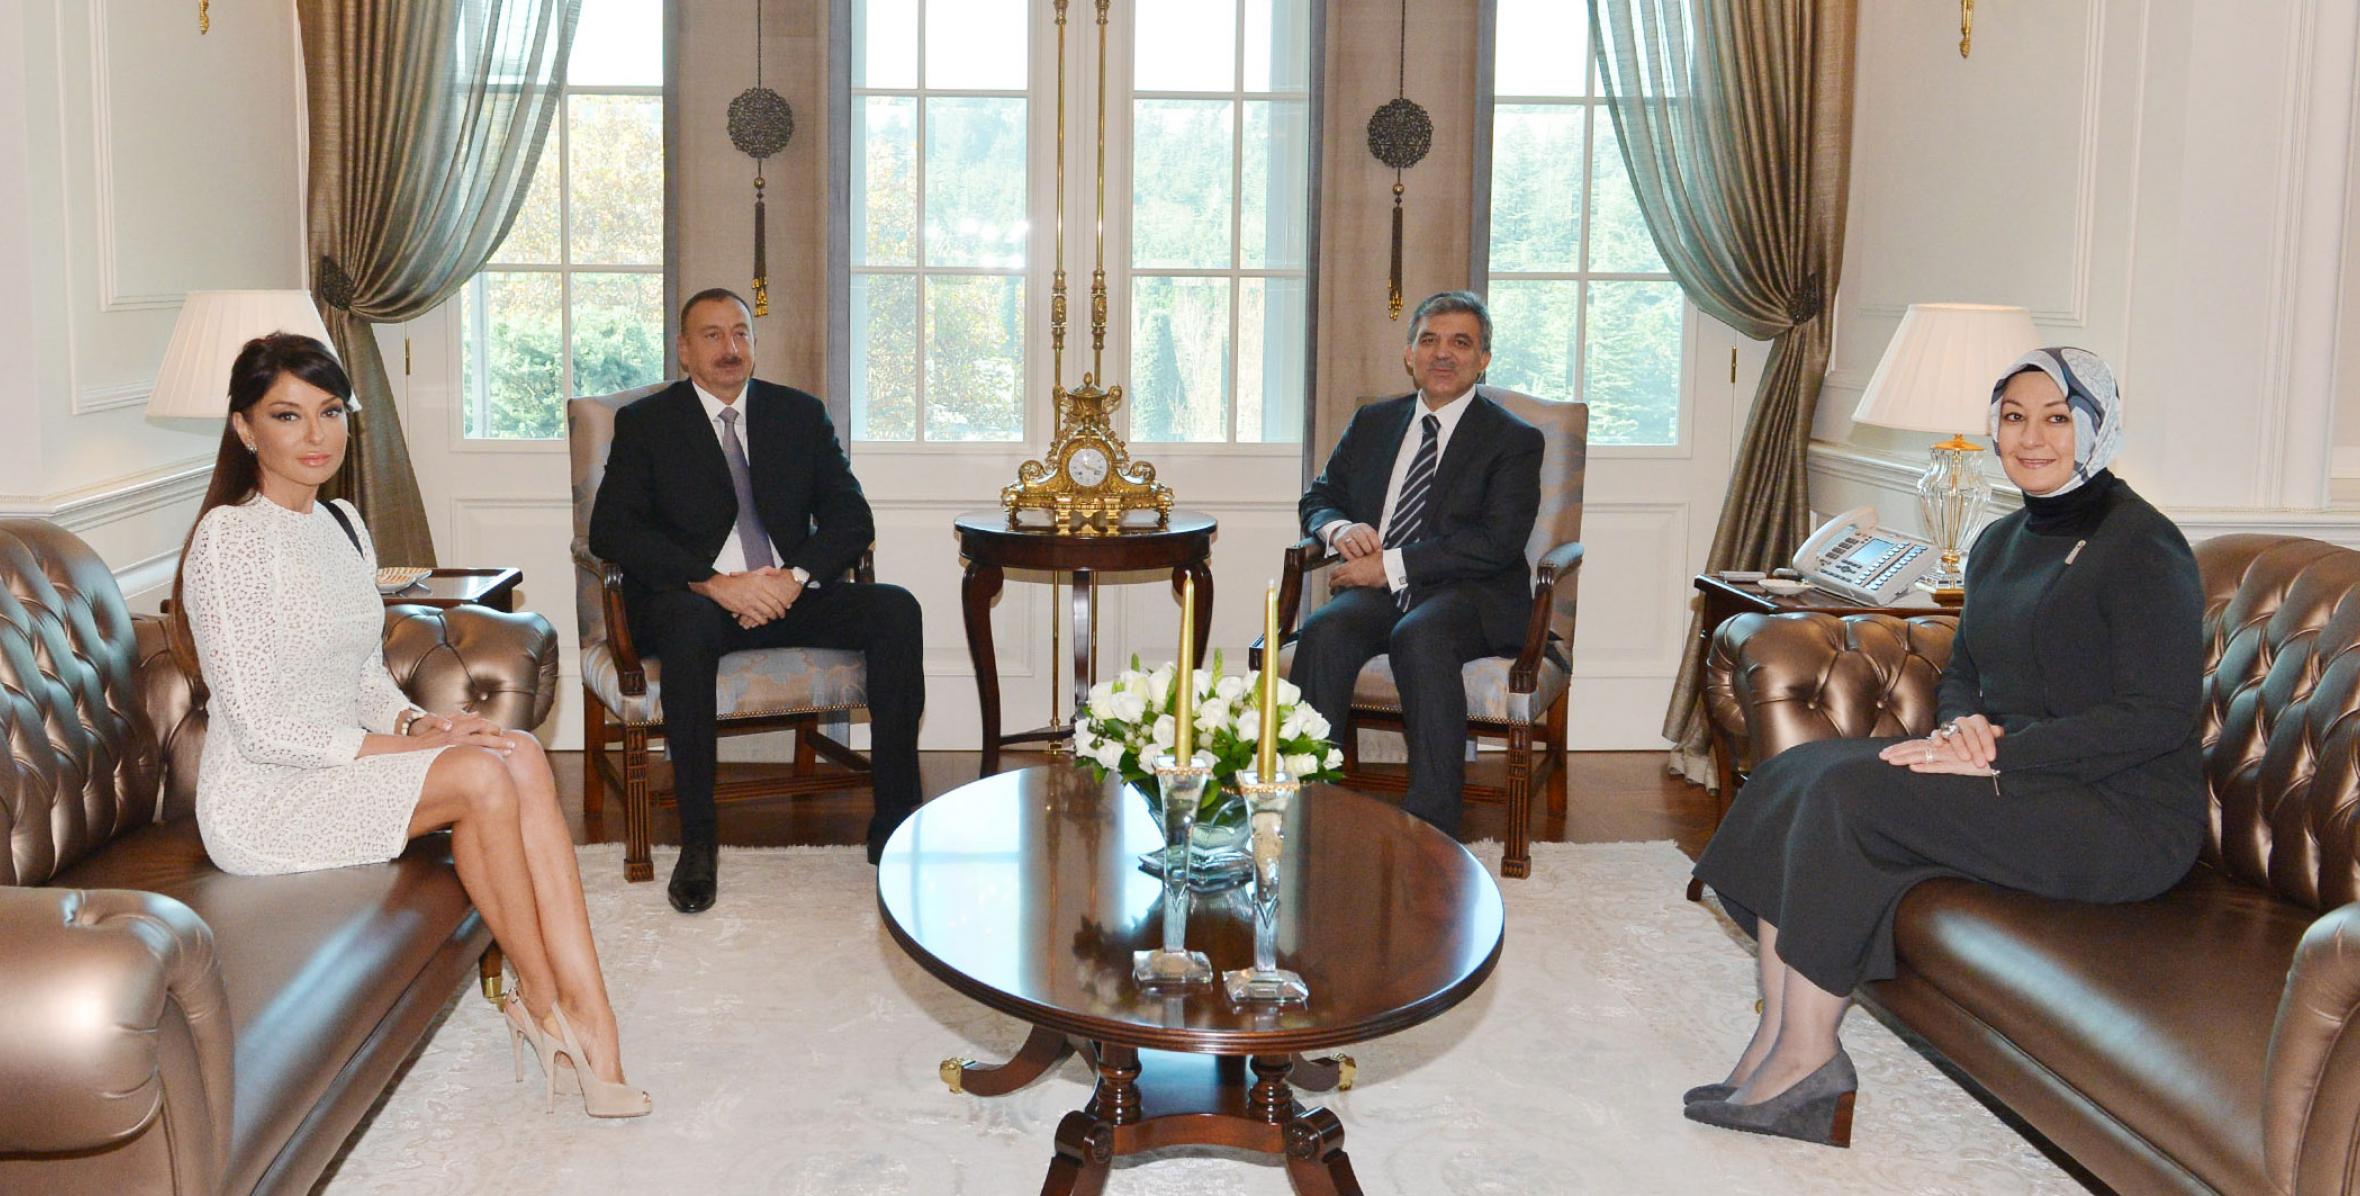 Состоялась совместная встреча президентов Азербайджана, Турции и их супруг